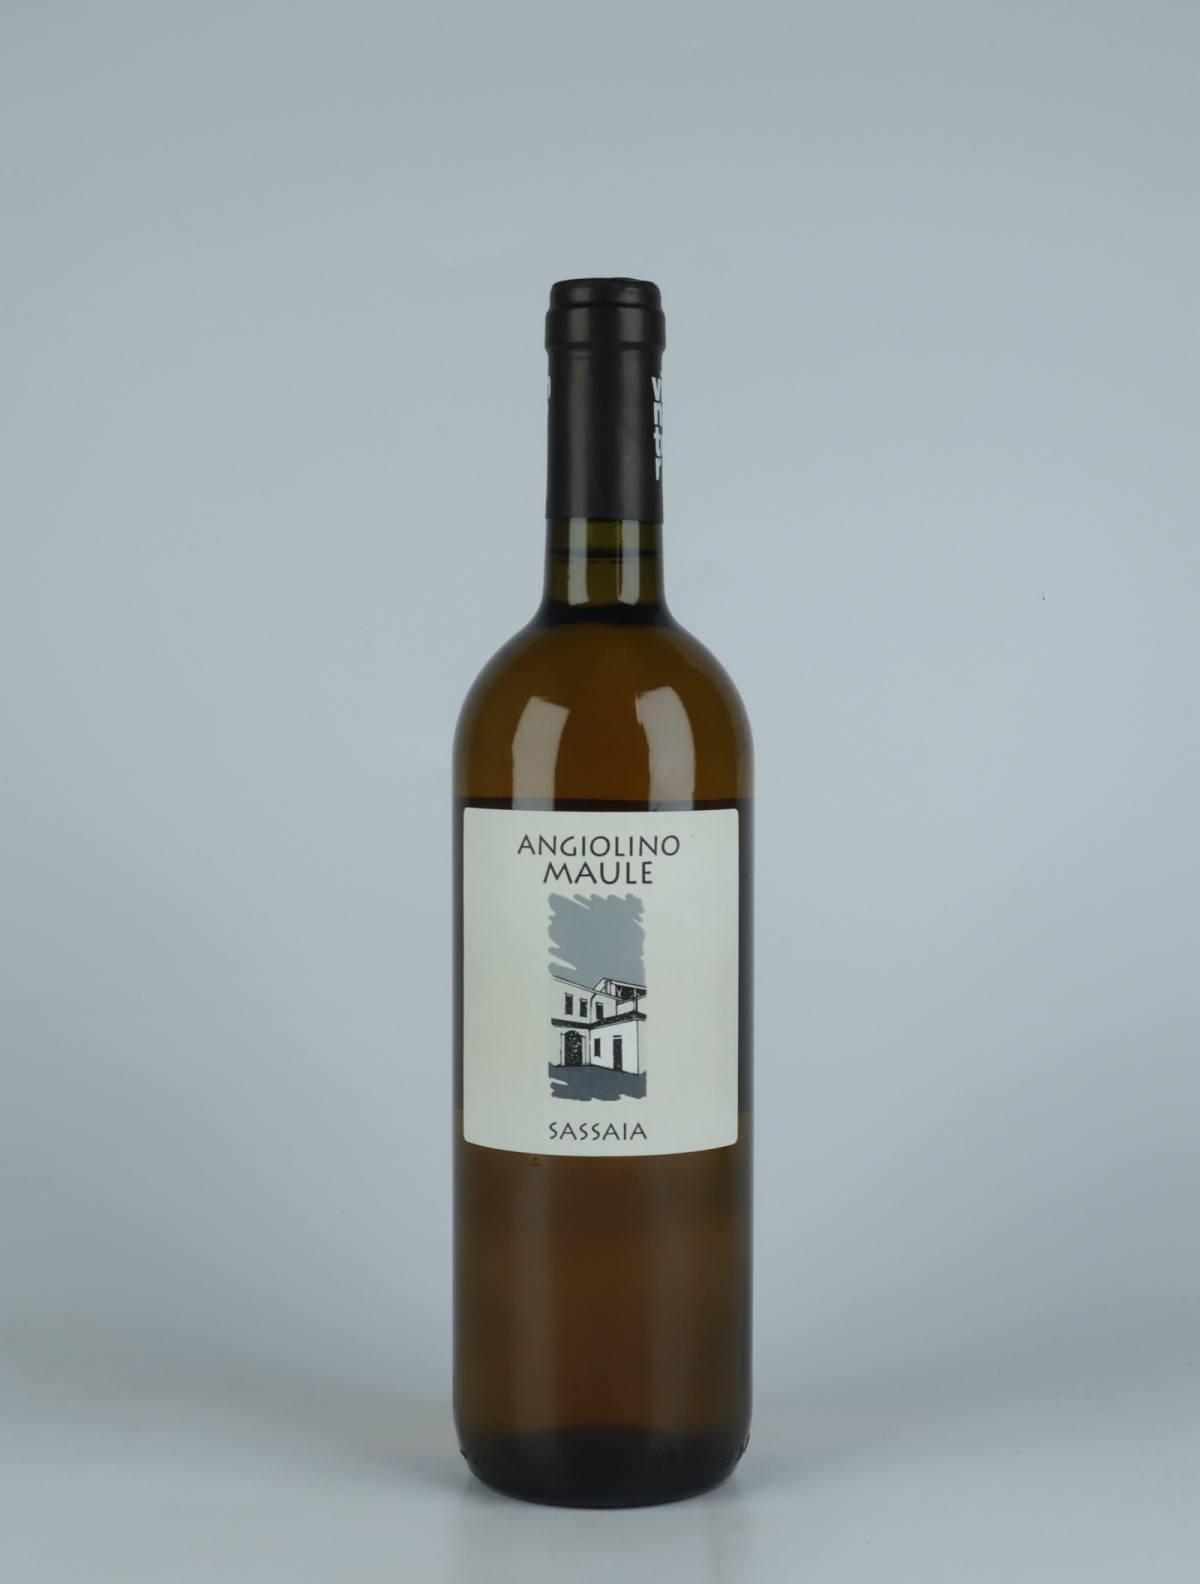 A bottle 2021 Sassaia White wine from La Biancara di Angiolino Maule, Veneto in Italy